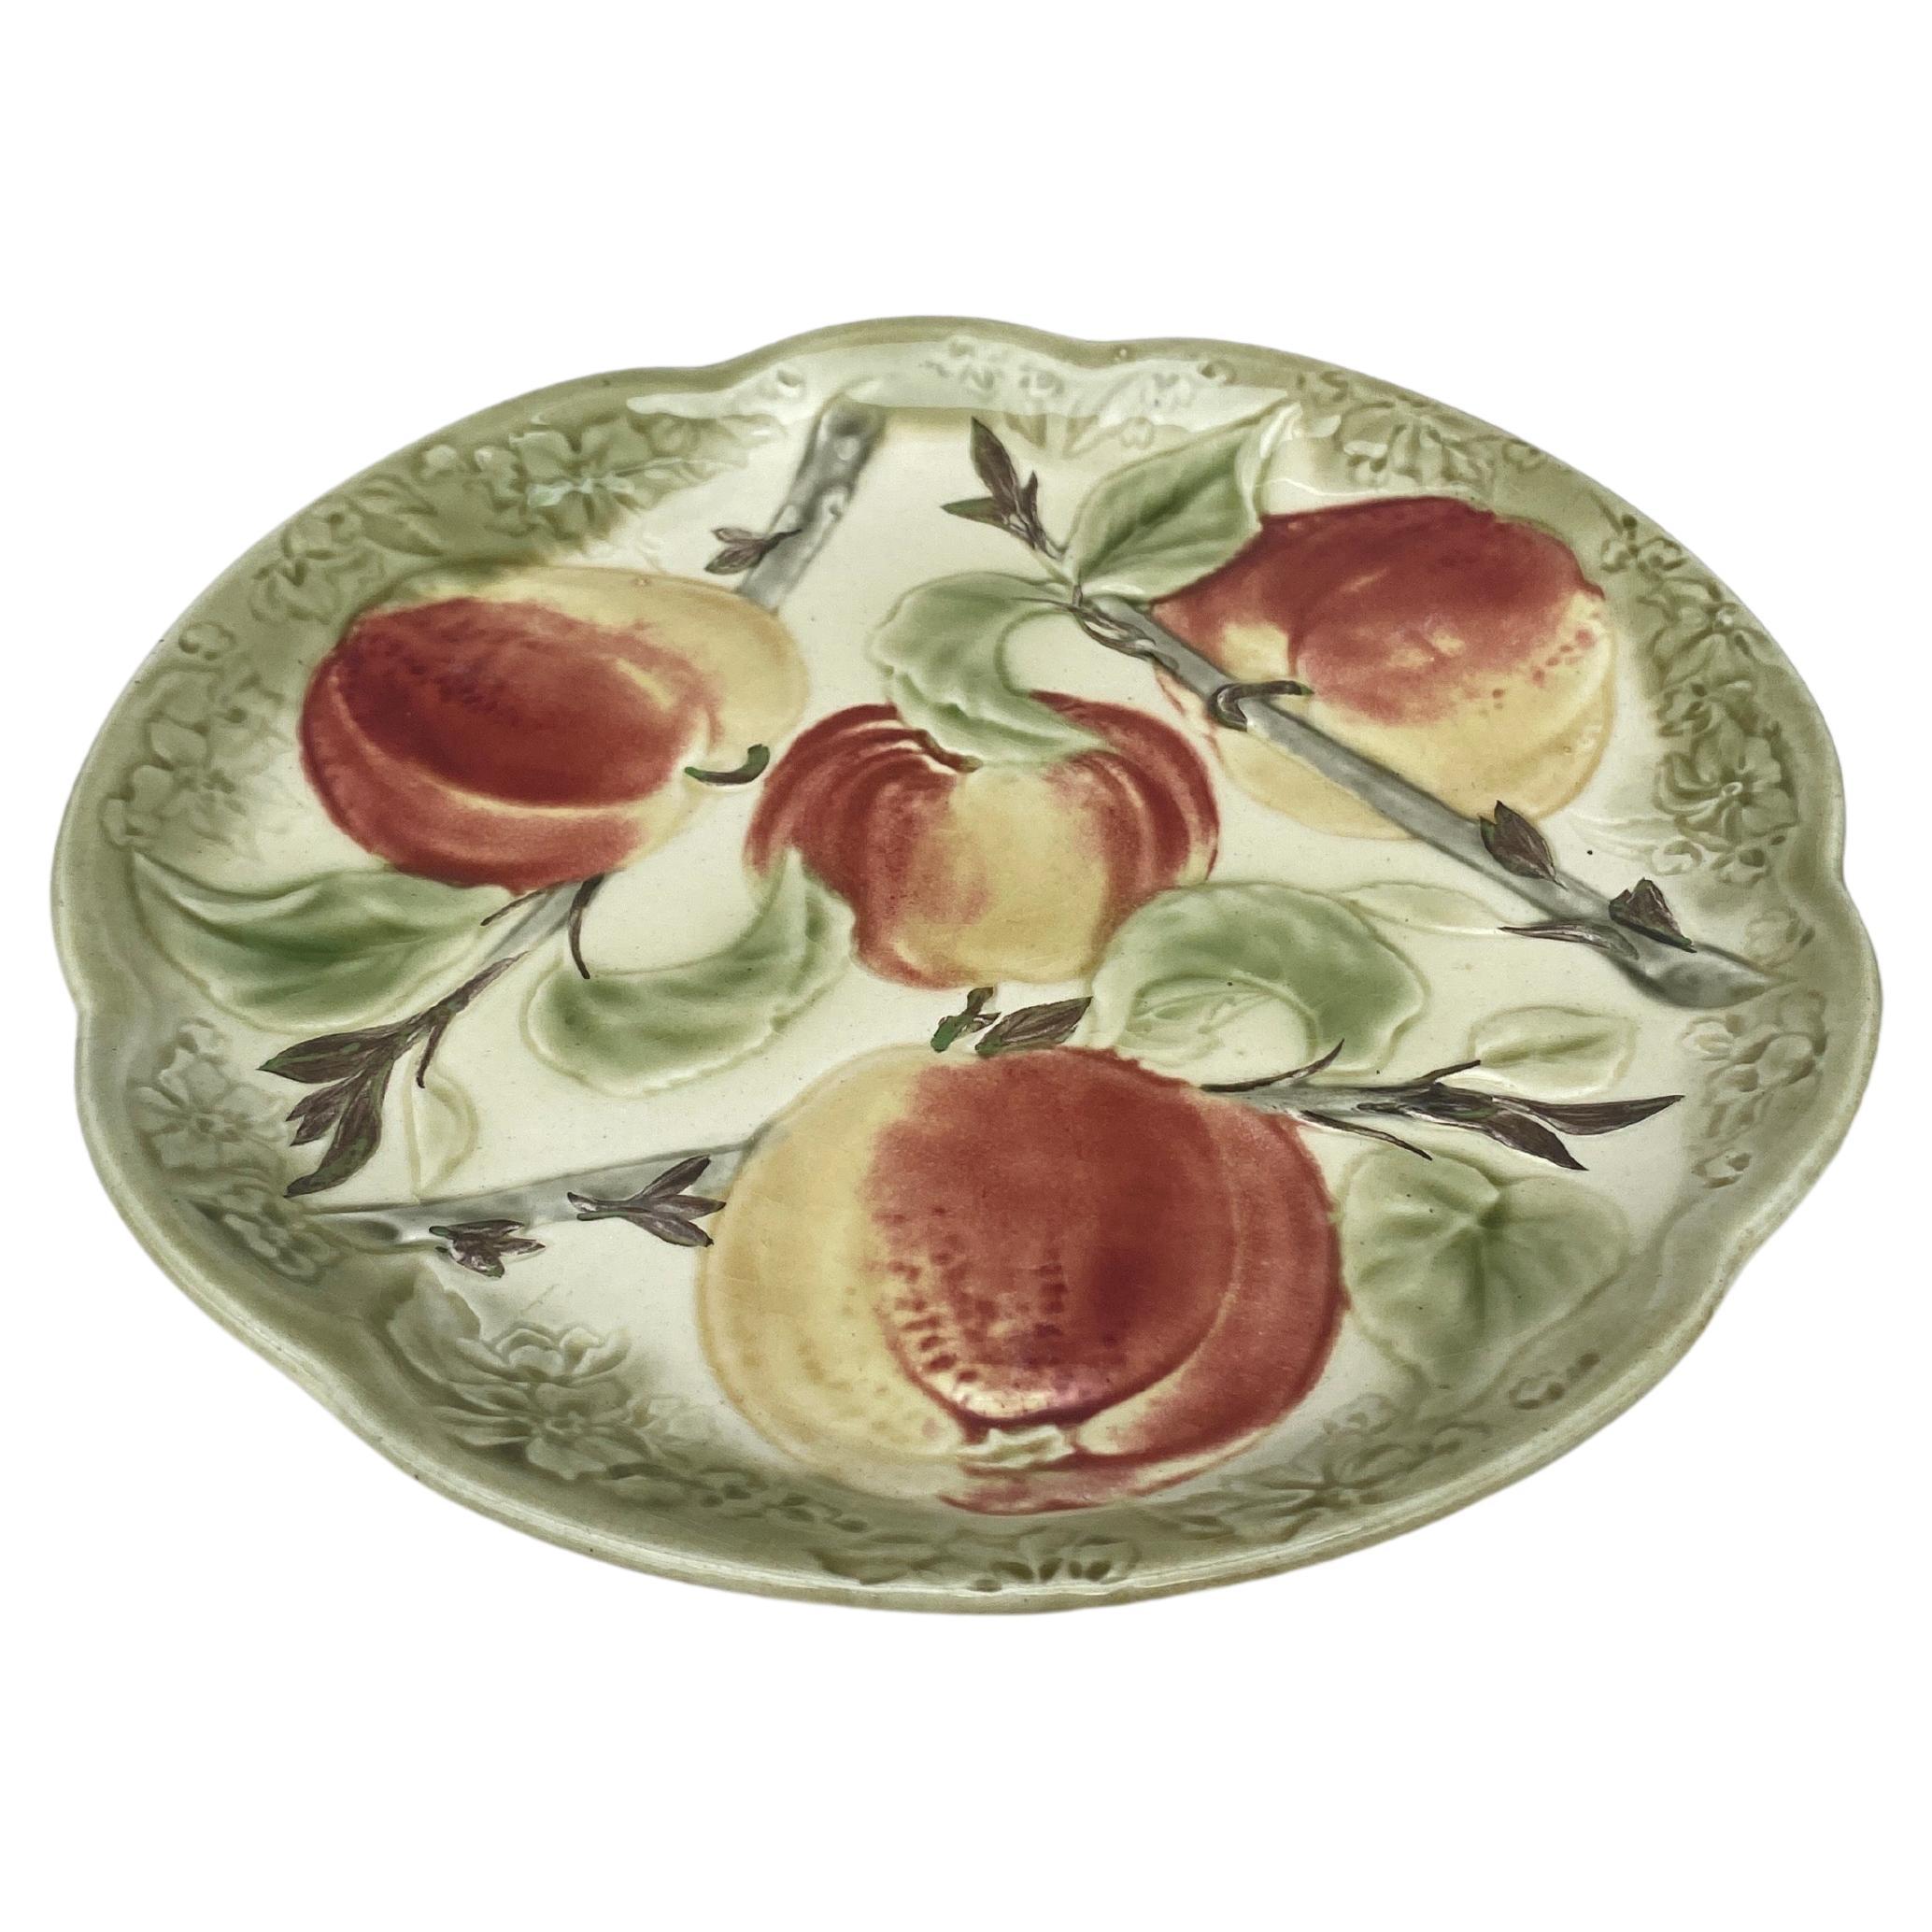 Assiette à pommes en majolique du XIXe siècle signée Choisy-le-Roi.
Réalisé pour Higgins & Setter New York.
The Higgins & Seiter Company de New York a commencé à vendre des décorations pour la table, notamment du verre richement taillé en 1887. En